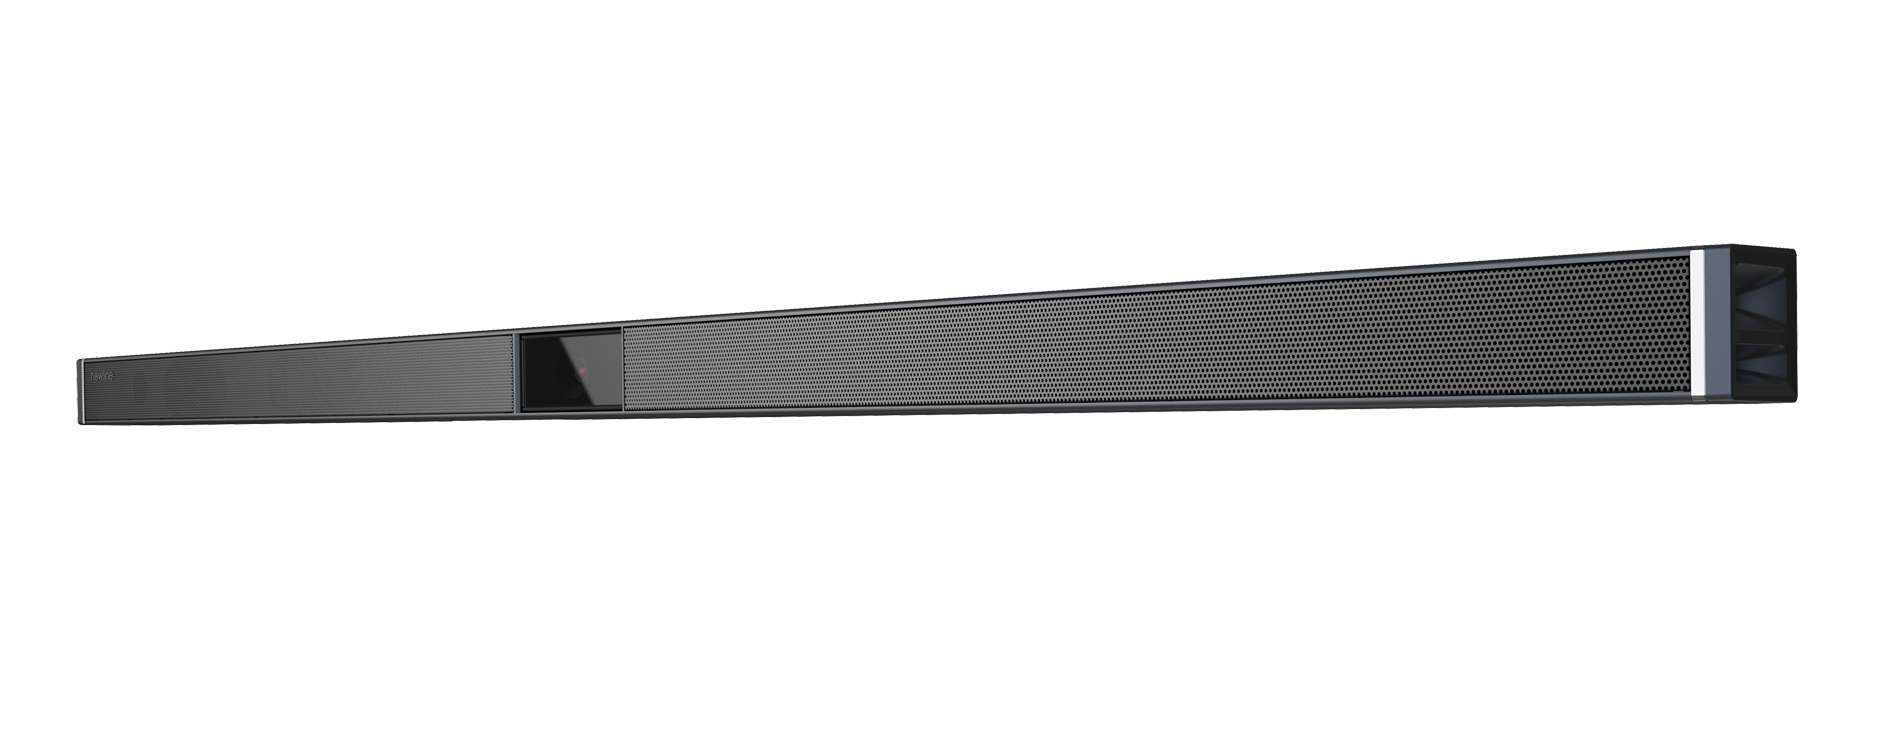 NewLine SoundBar Master M1 - 4K Kamera - USB-C - passend für NewLine MIRA und ATLAS - kleine Räume